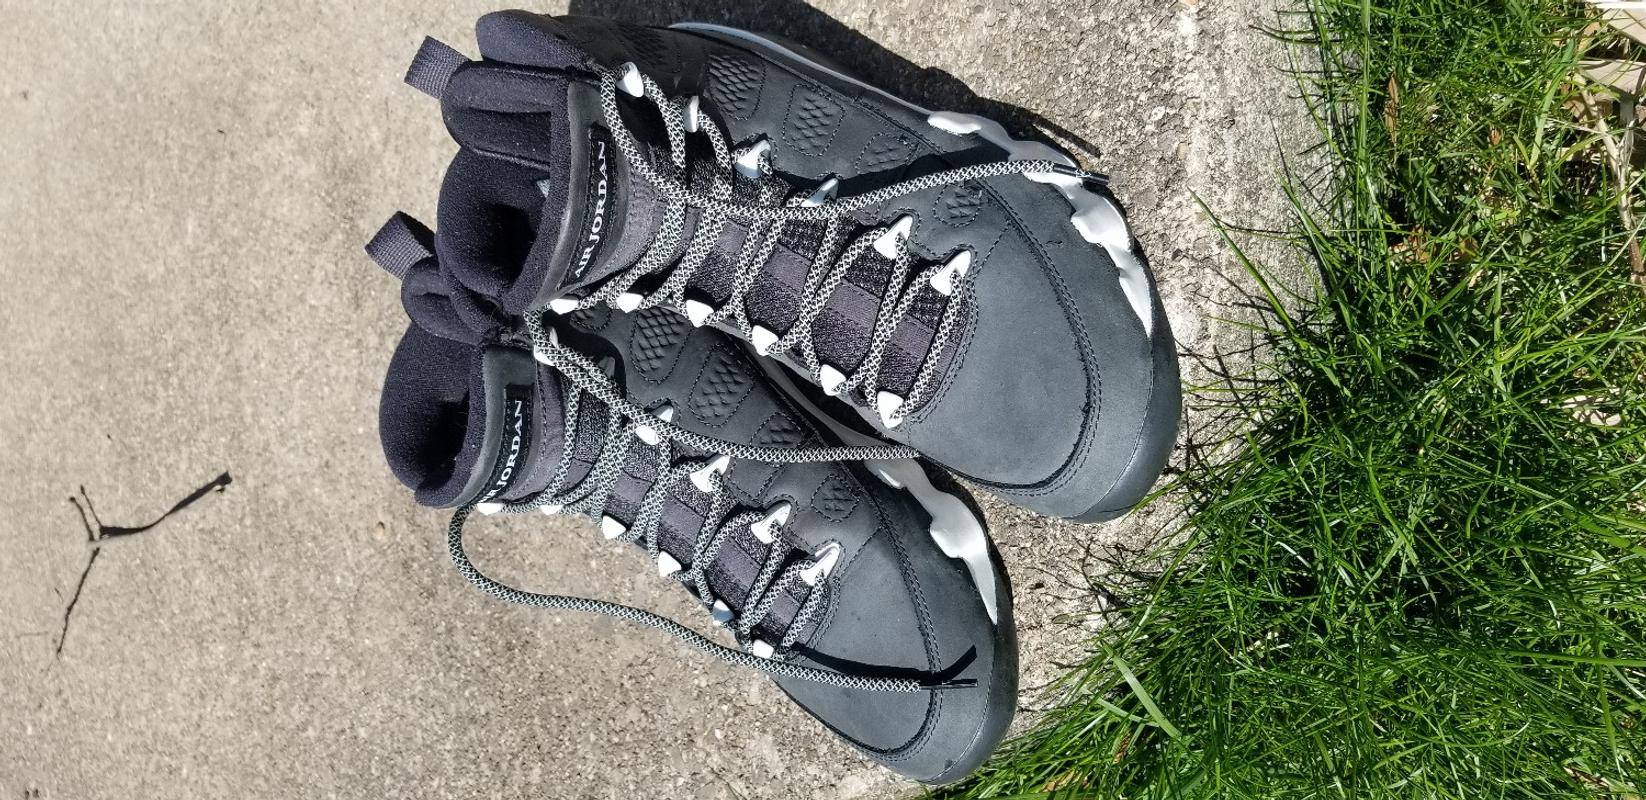 160cm 63" Rope 3m reflective shoe laces fit for LBJ 9 10 11 12 Black 